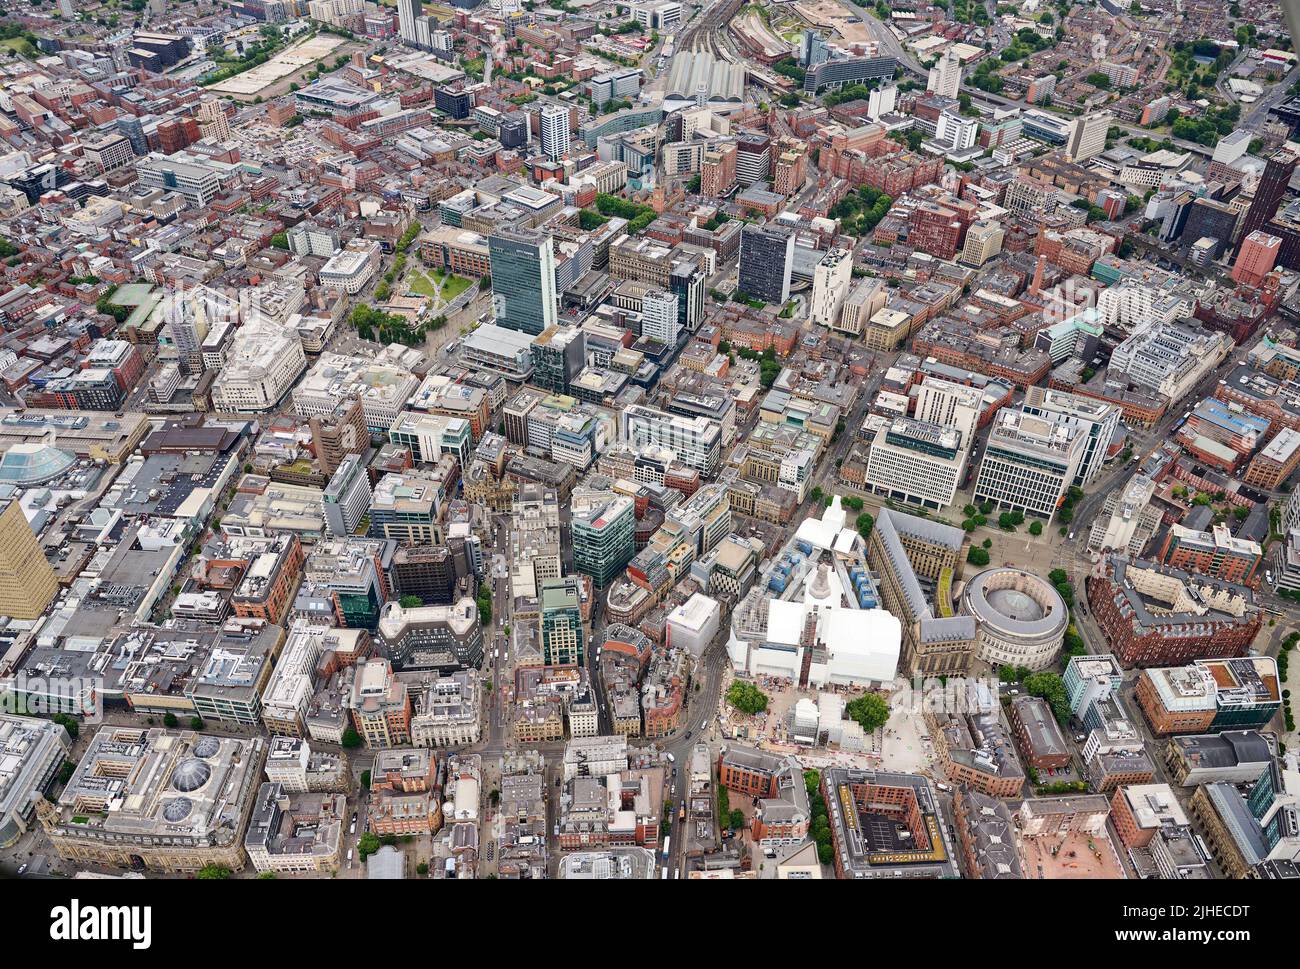 Vue aérienne du centre-ville de Manchester, nord-ouest de l'Angleterre, nord de l'Angleterre, Royaume-Uni Banque D'Images